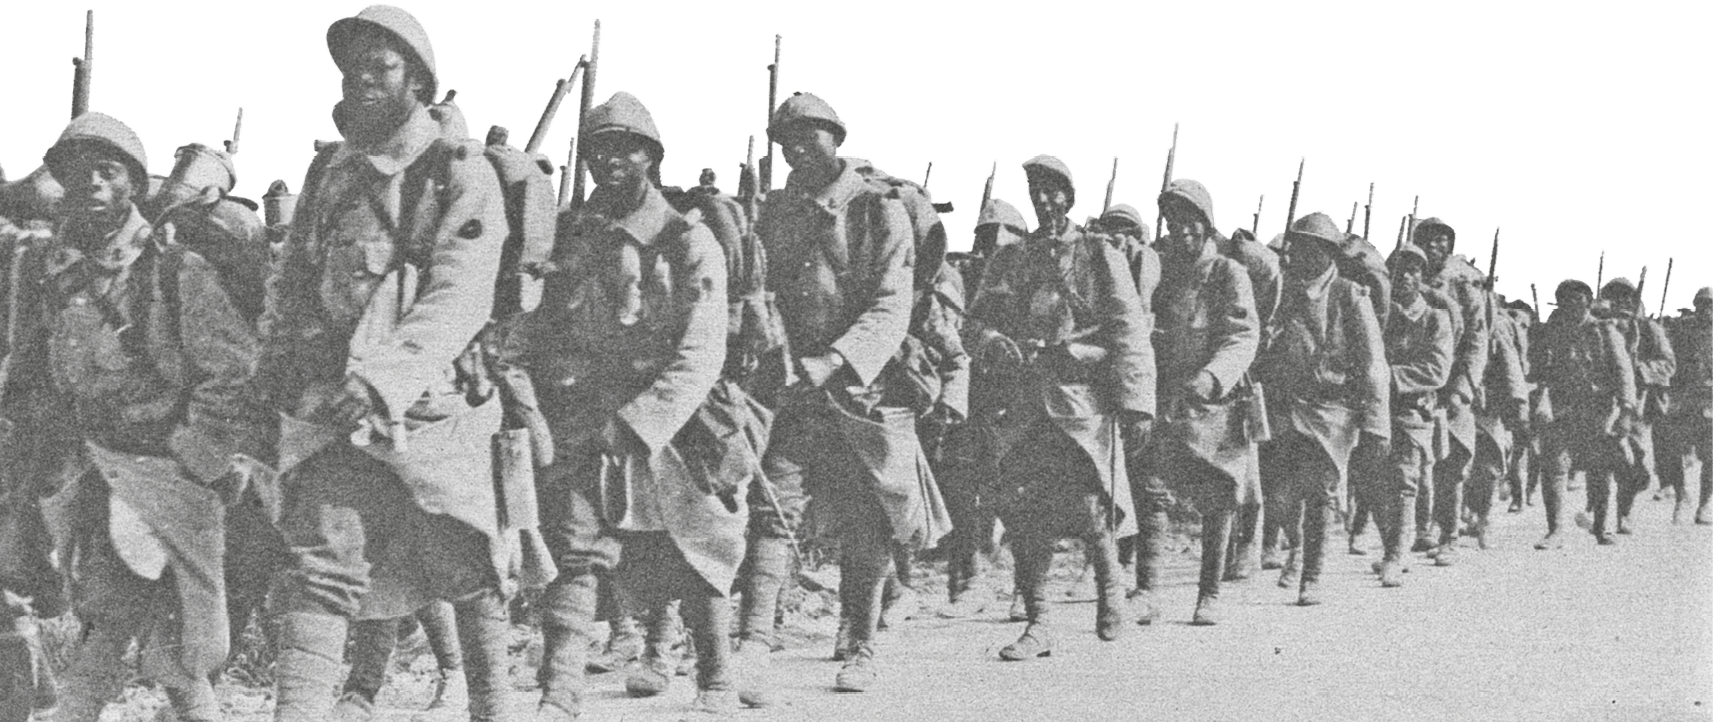 Fotografia em preto e branco. Soldados de uniforme, capacete e armas sobre o ombro. Estão marchando em filas.